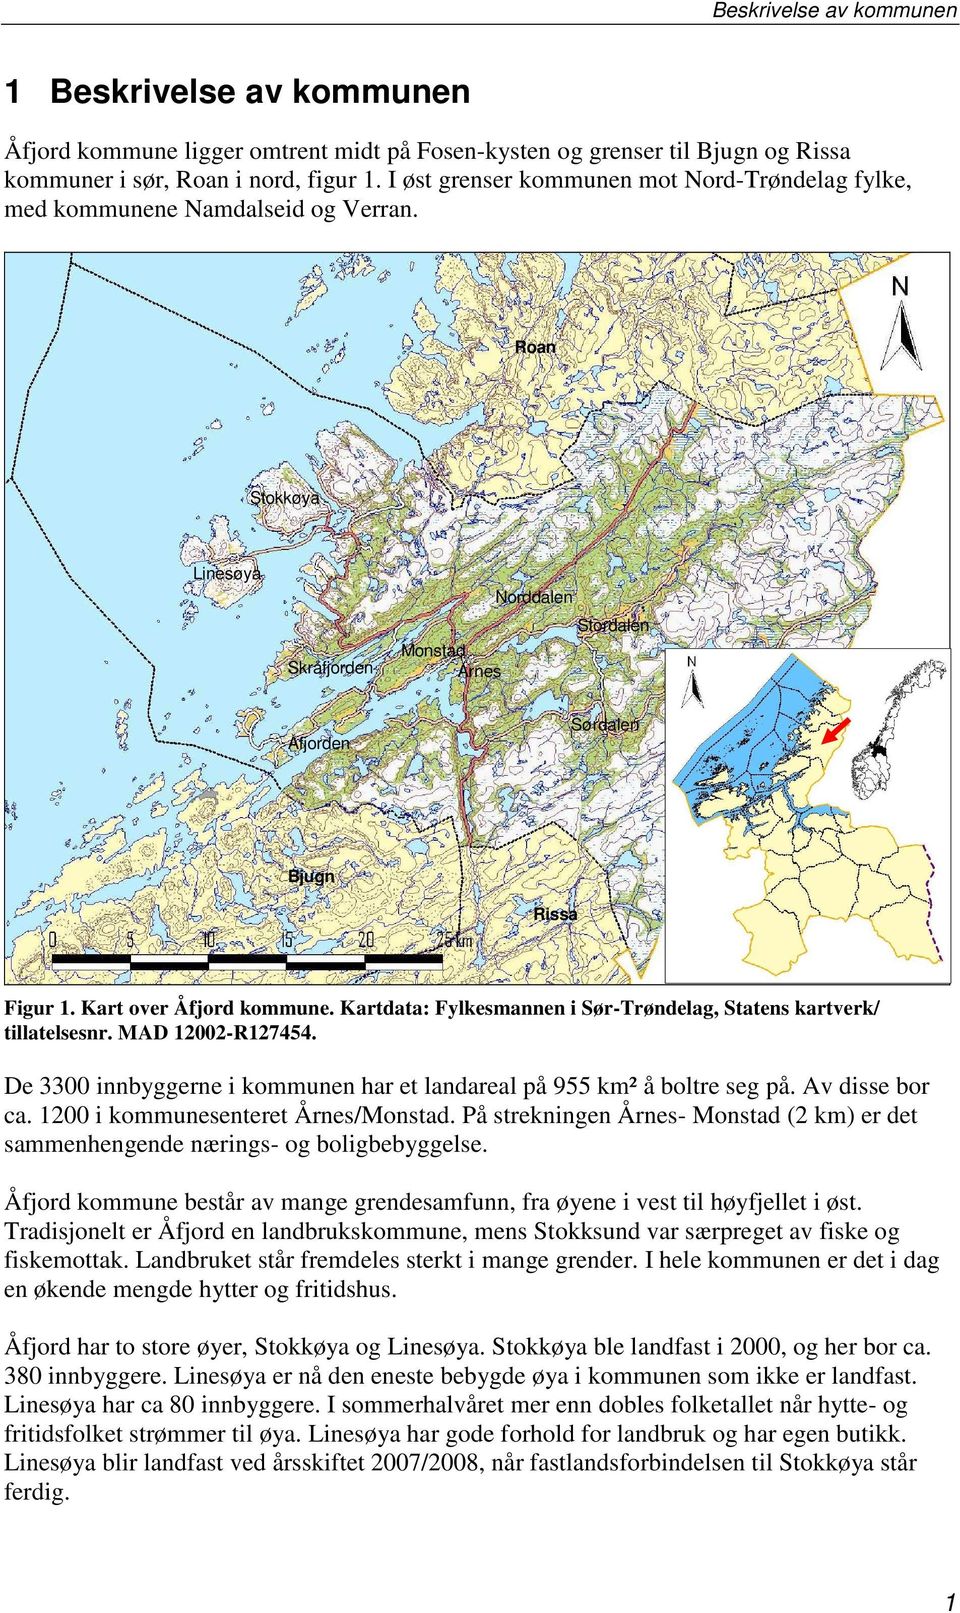 Kart over Åfjord kommune. Kartdata: Fylkesmannen i Sør-Trøndelag, Statens kartverk/ tillatelsesnr. MAD 12002-R127454. De 3300 innbyggerne i kommunen har et landareal på 955 km² å boltre seg på.